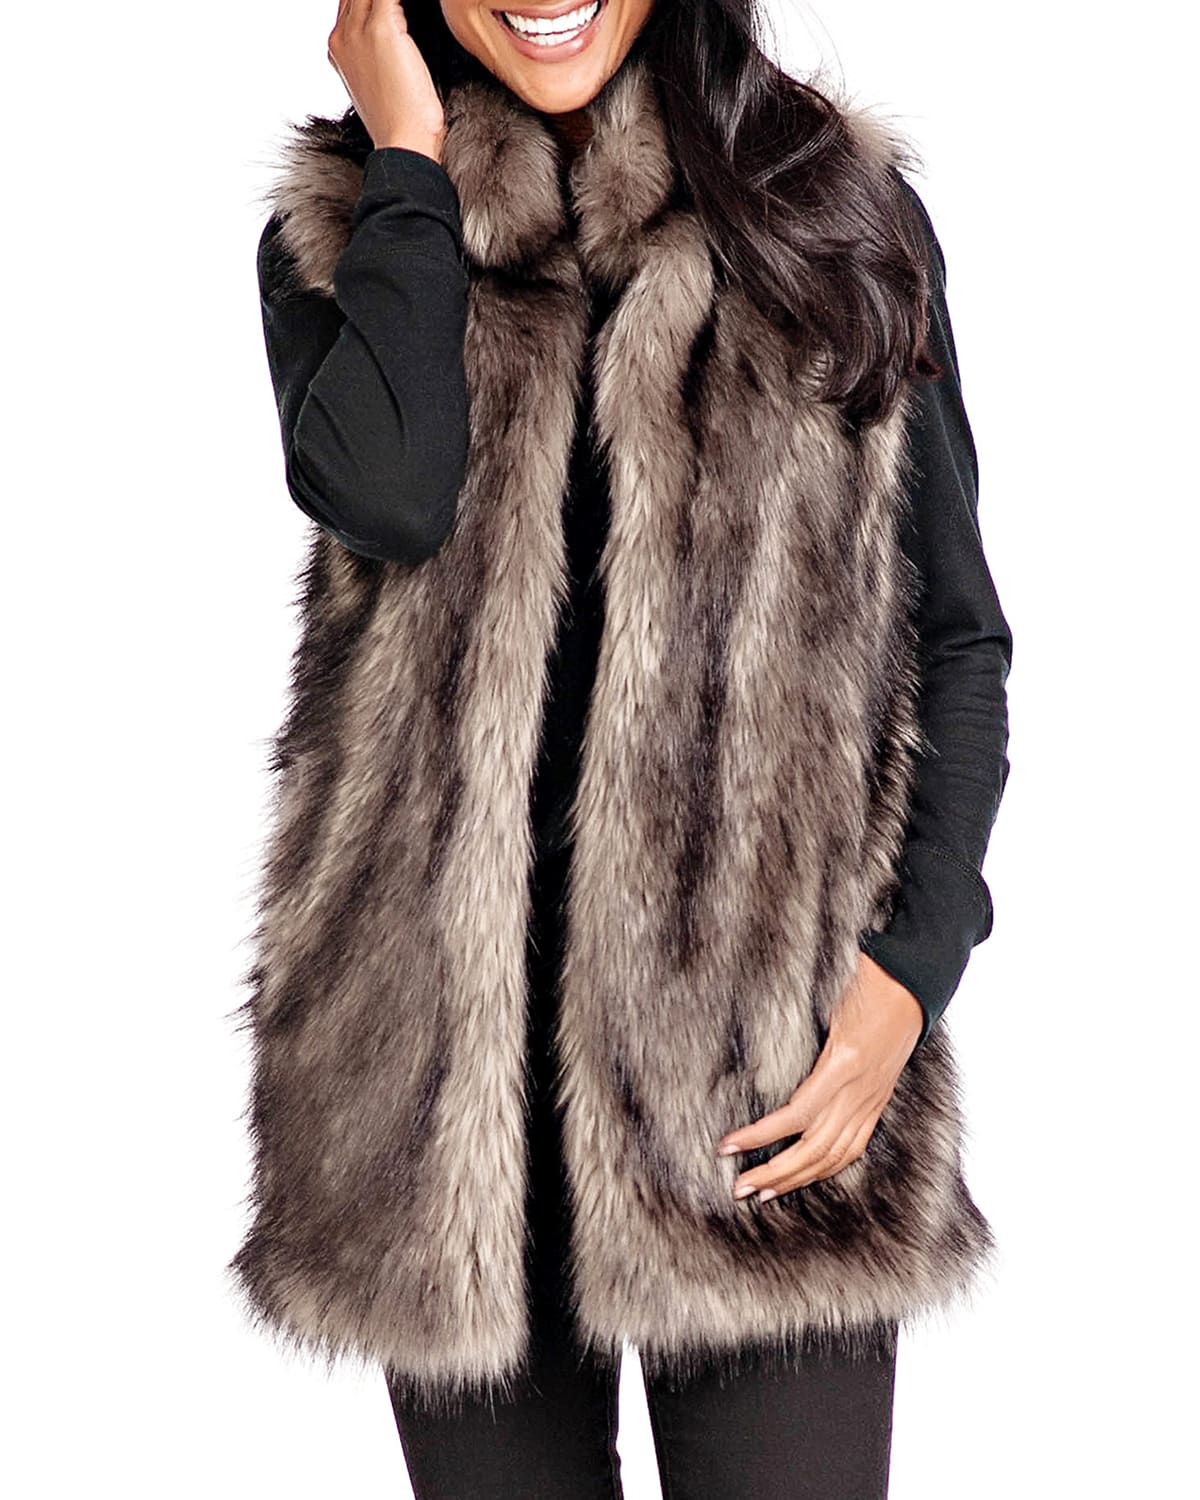 Fabulous Furs Limited Edition Faux-Fur Vest - Inclusive Sizing